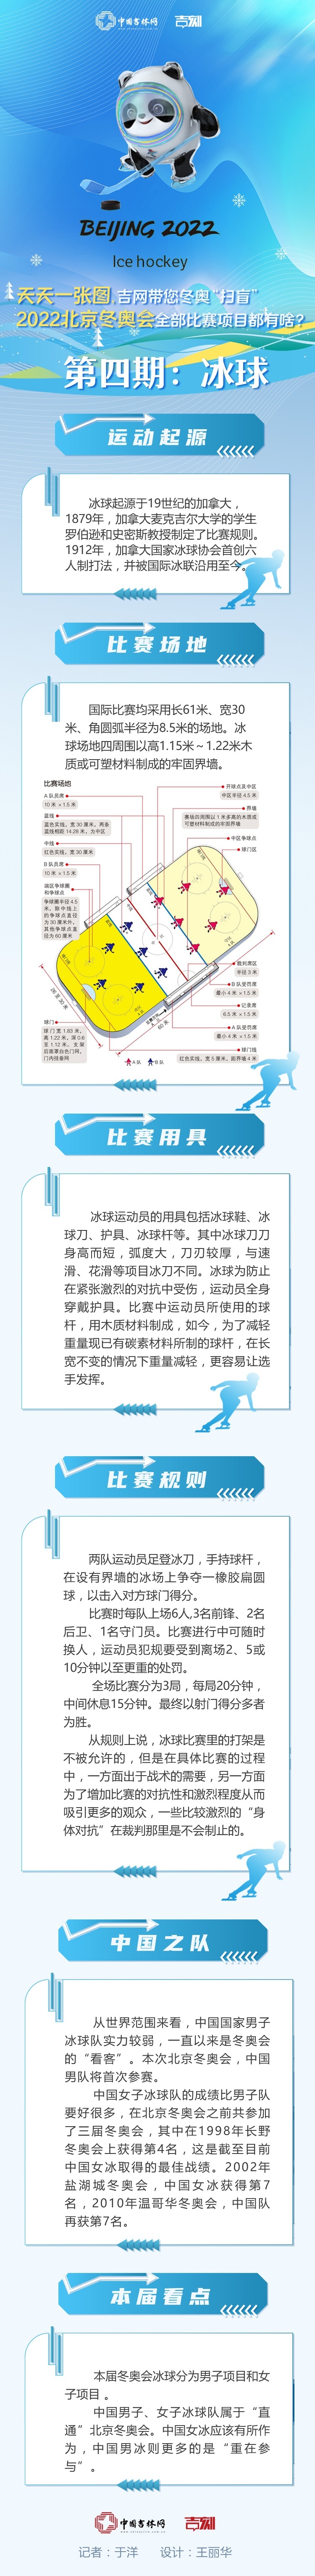 天天一张图， 吉网带您“扫盲”丨2022北京冬奥会比赛项目都有啥？第四期 冰球